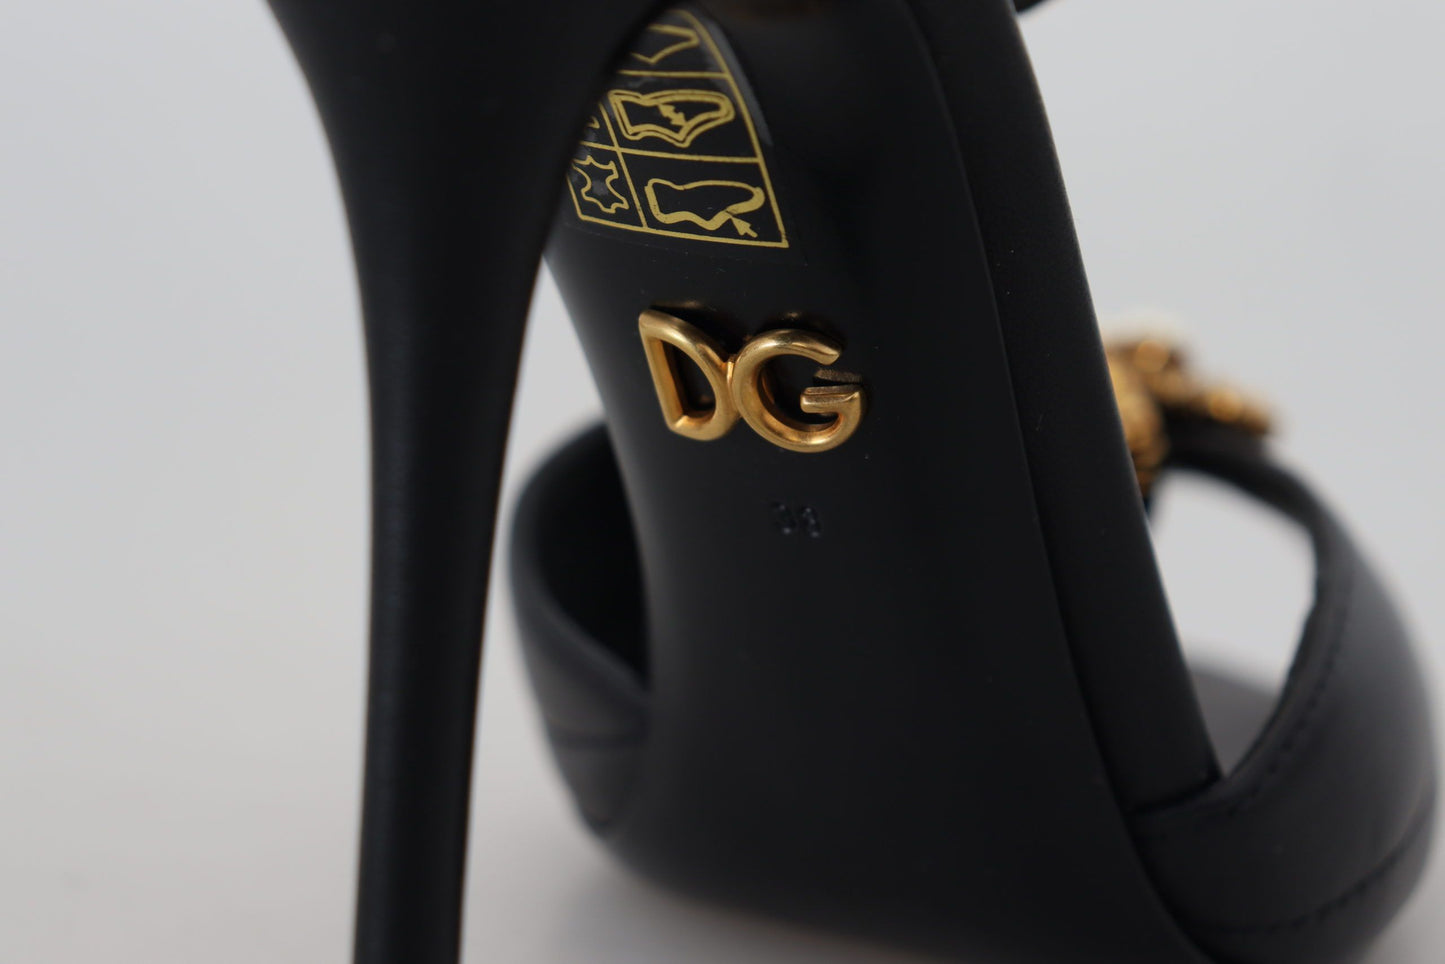 Dolce & Gabbana Elegant Gold-Embellished Leather Sandals